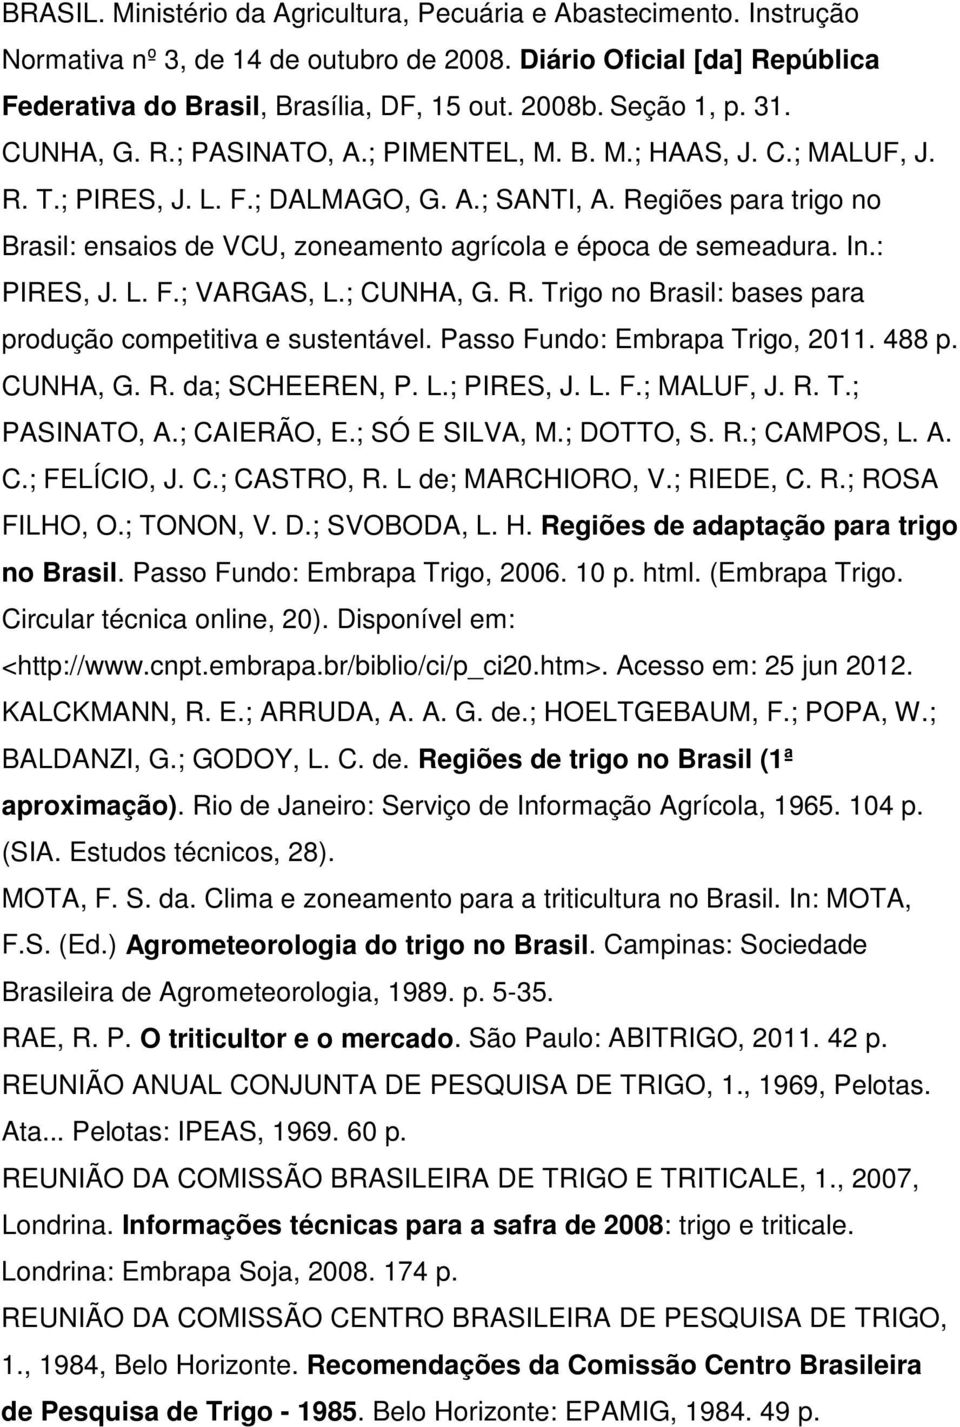 Regiões para trigo no Brasil: ensaios de VCU, zoneamento agrícola e época de semeadura. In.: PIRES, J. L. F.; VARGAS, L.; CUNHA, G. R. Trigo no Brasil: bases para produção competitiva e sustentável.